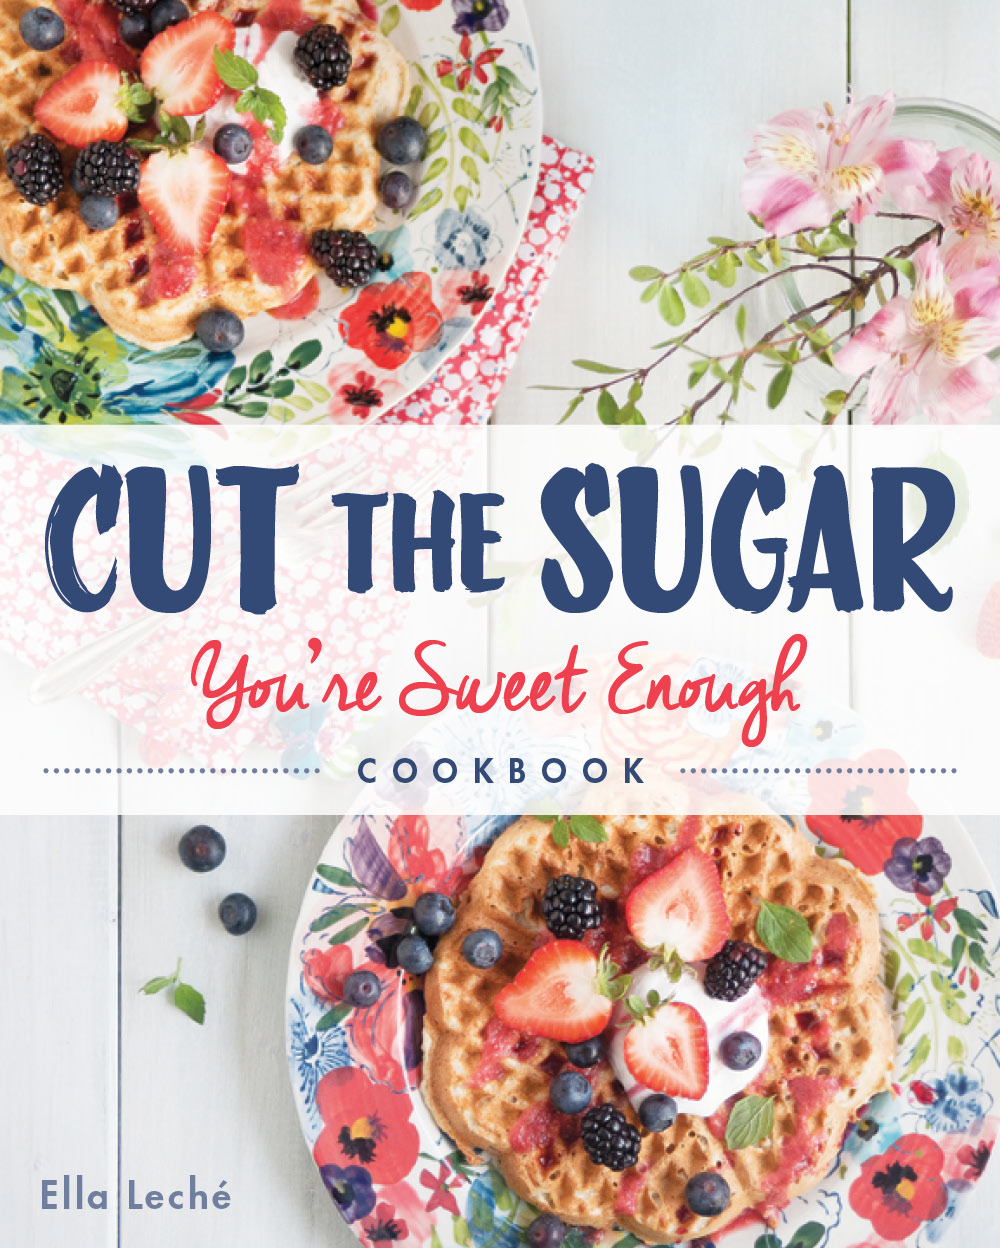 Cut-the-Sugar-Cookbook-Recipe-Photos-Look-inside-cut-the-sugar-book